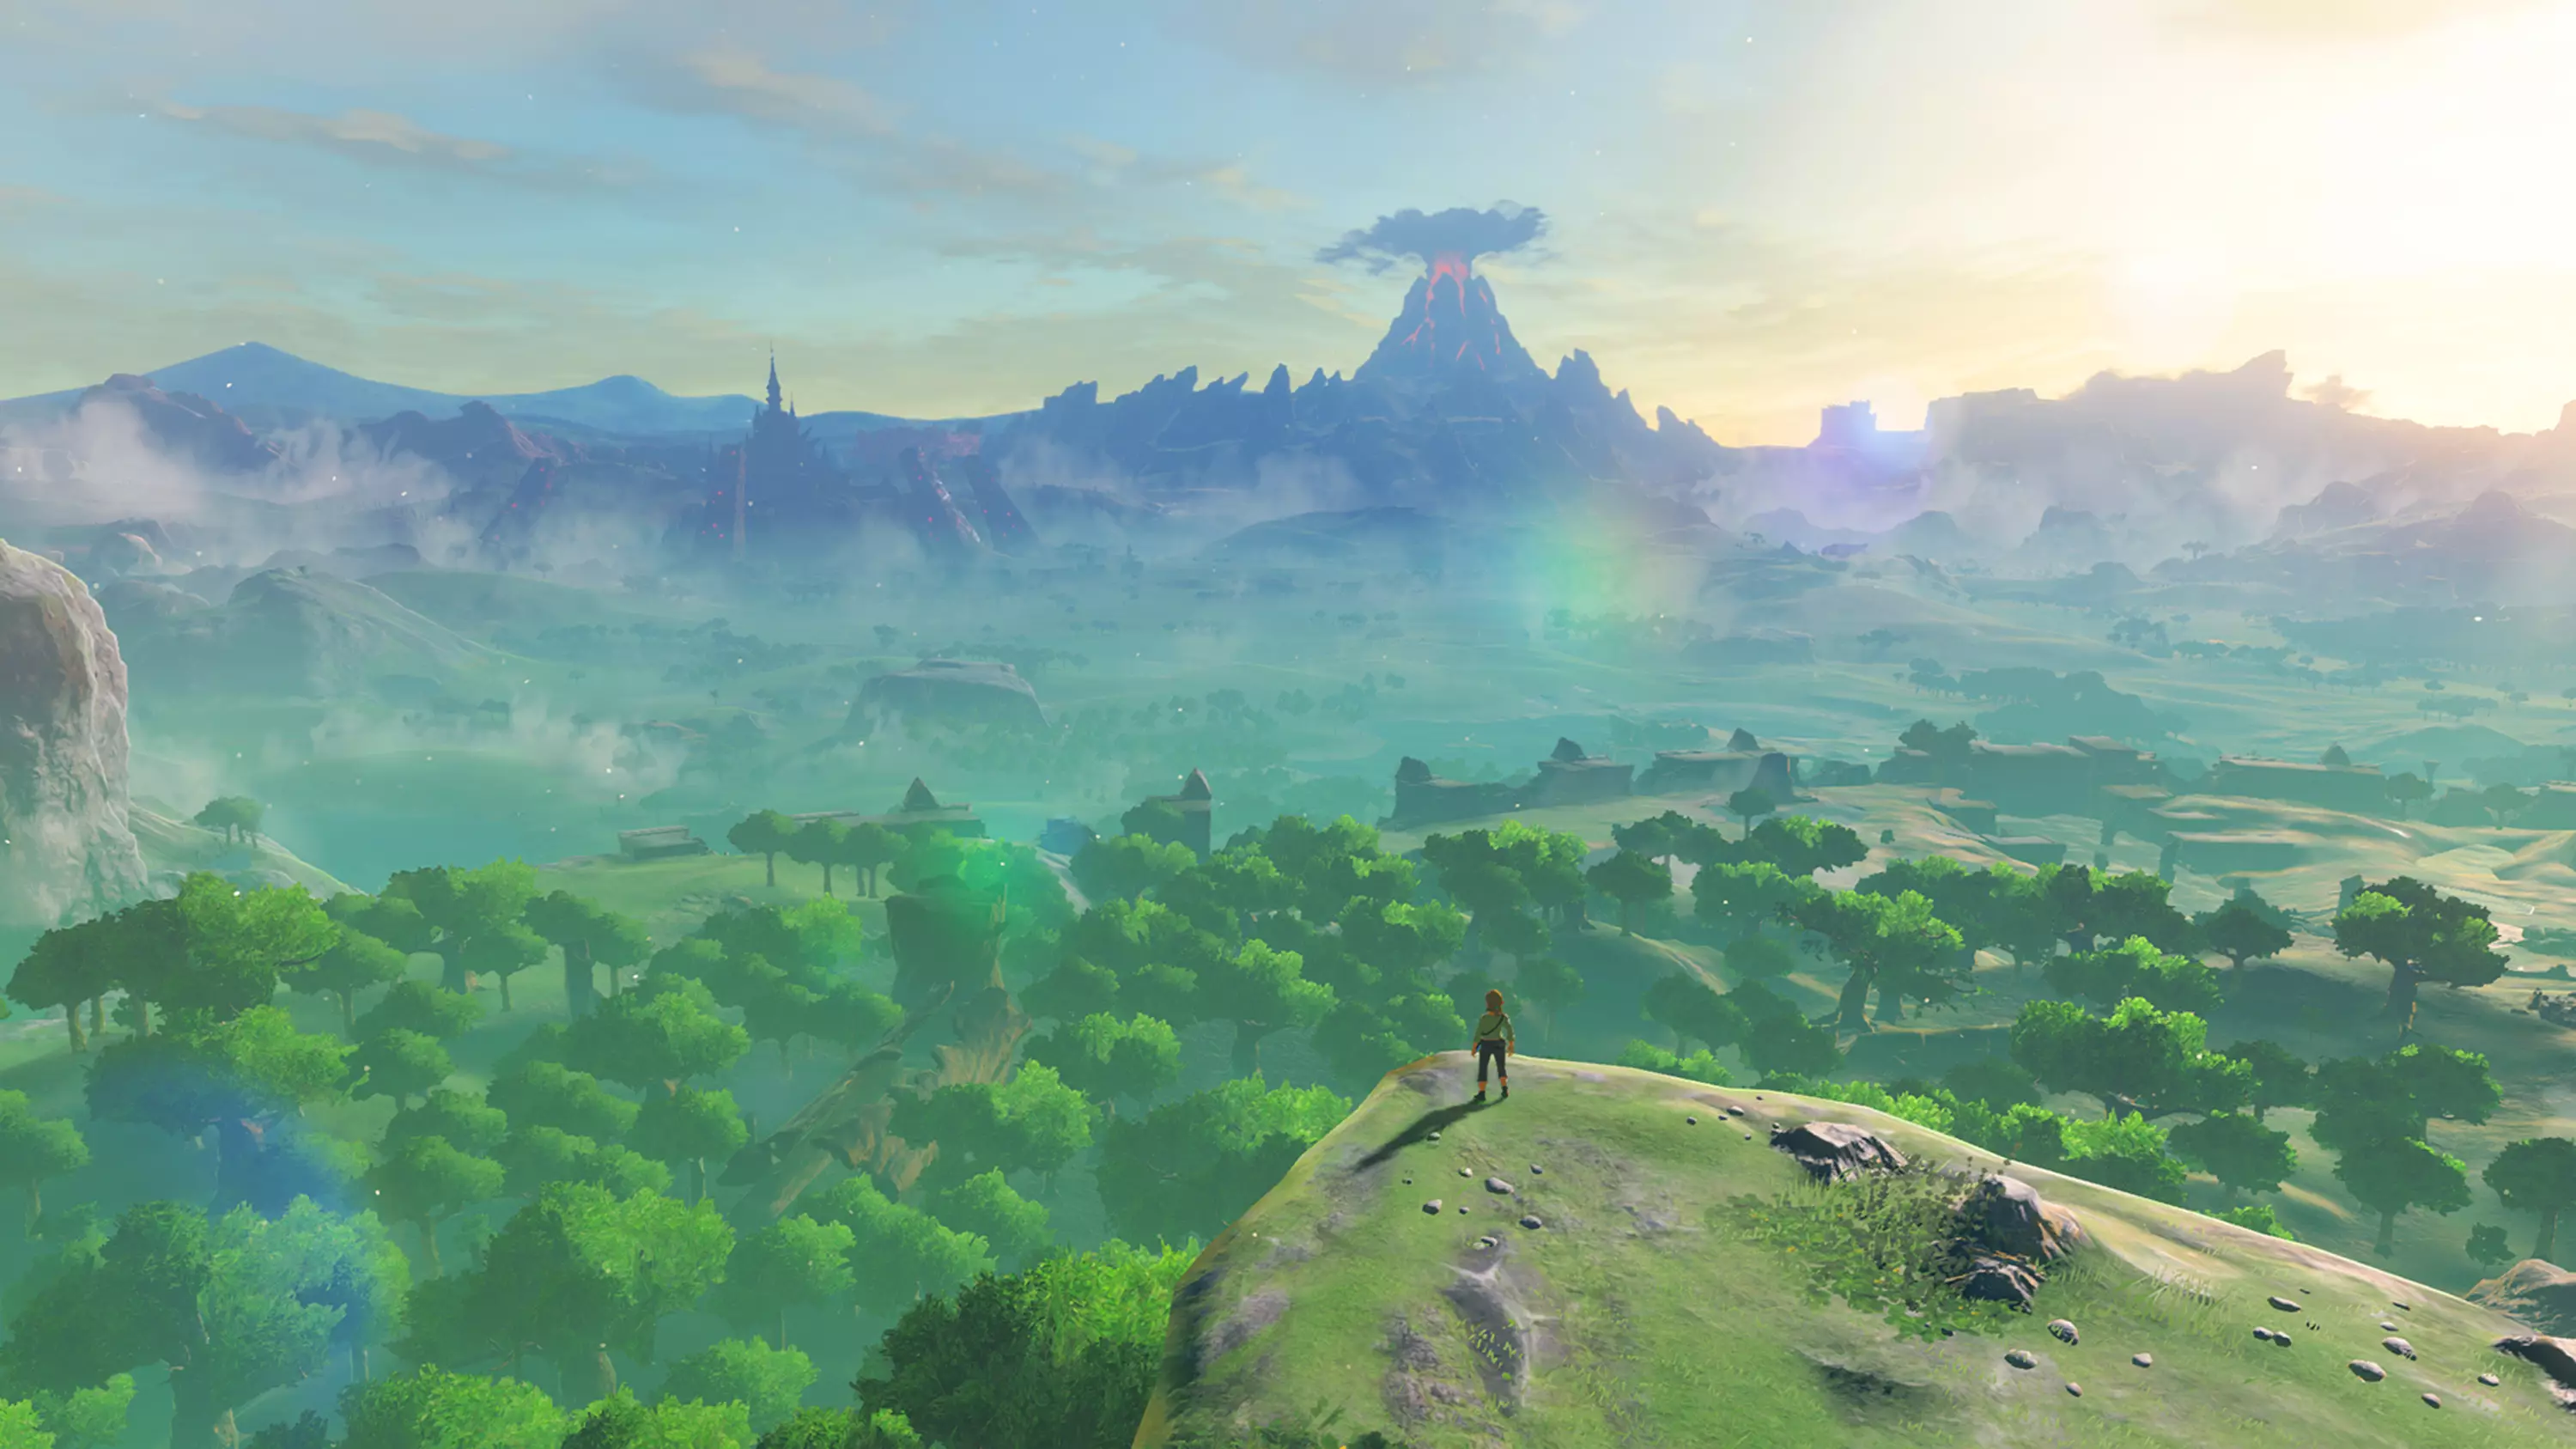 The Legend of Zelda: Breath of the Wild /